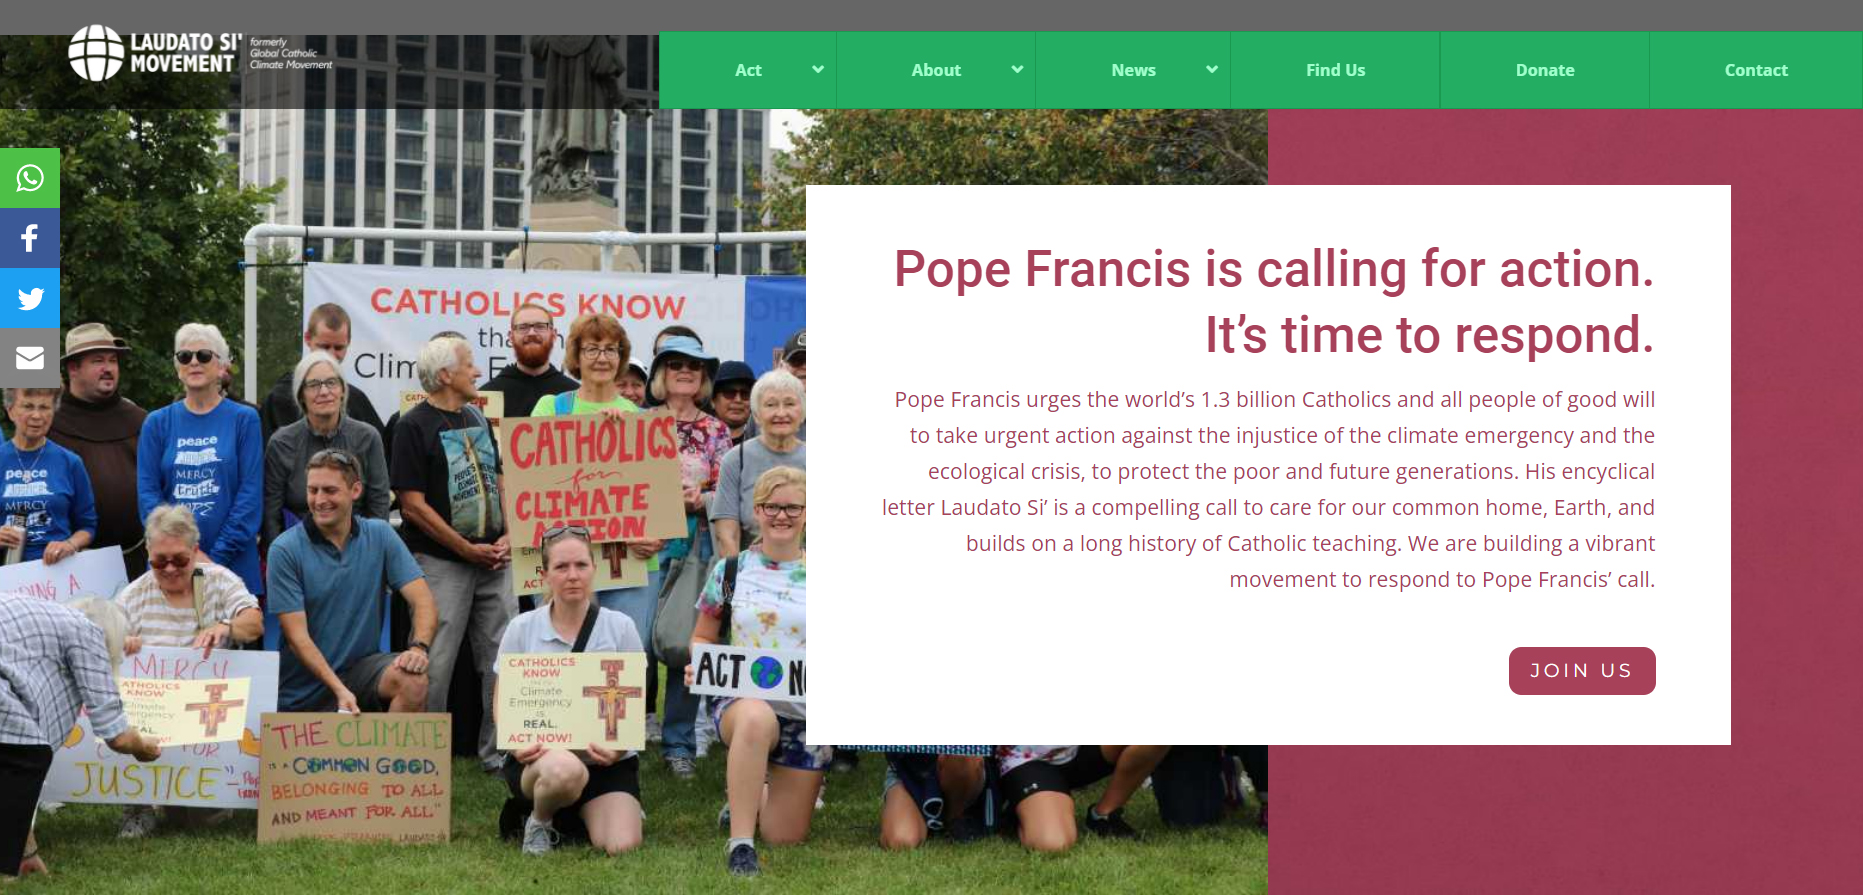 Всемирное католическое движение по сохранению климата